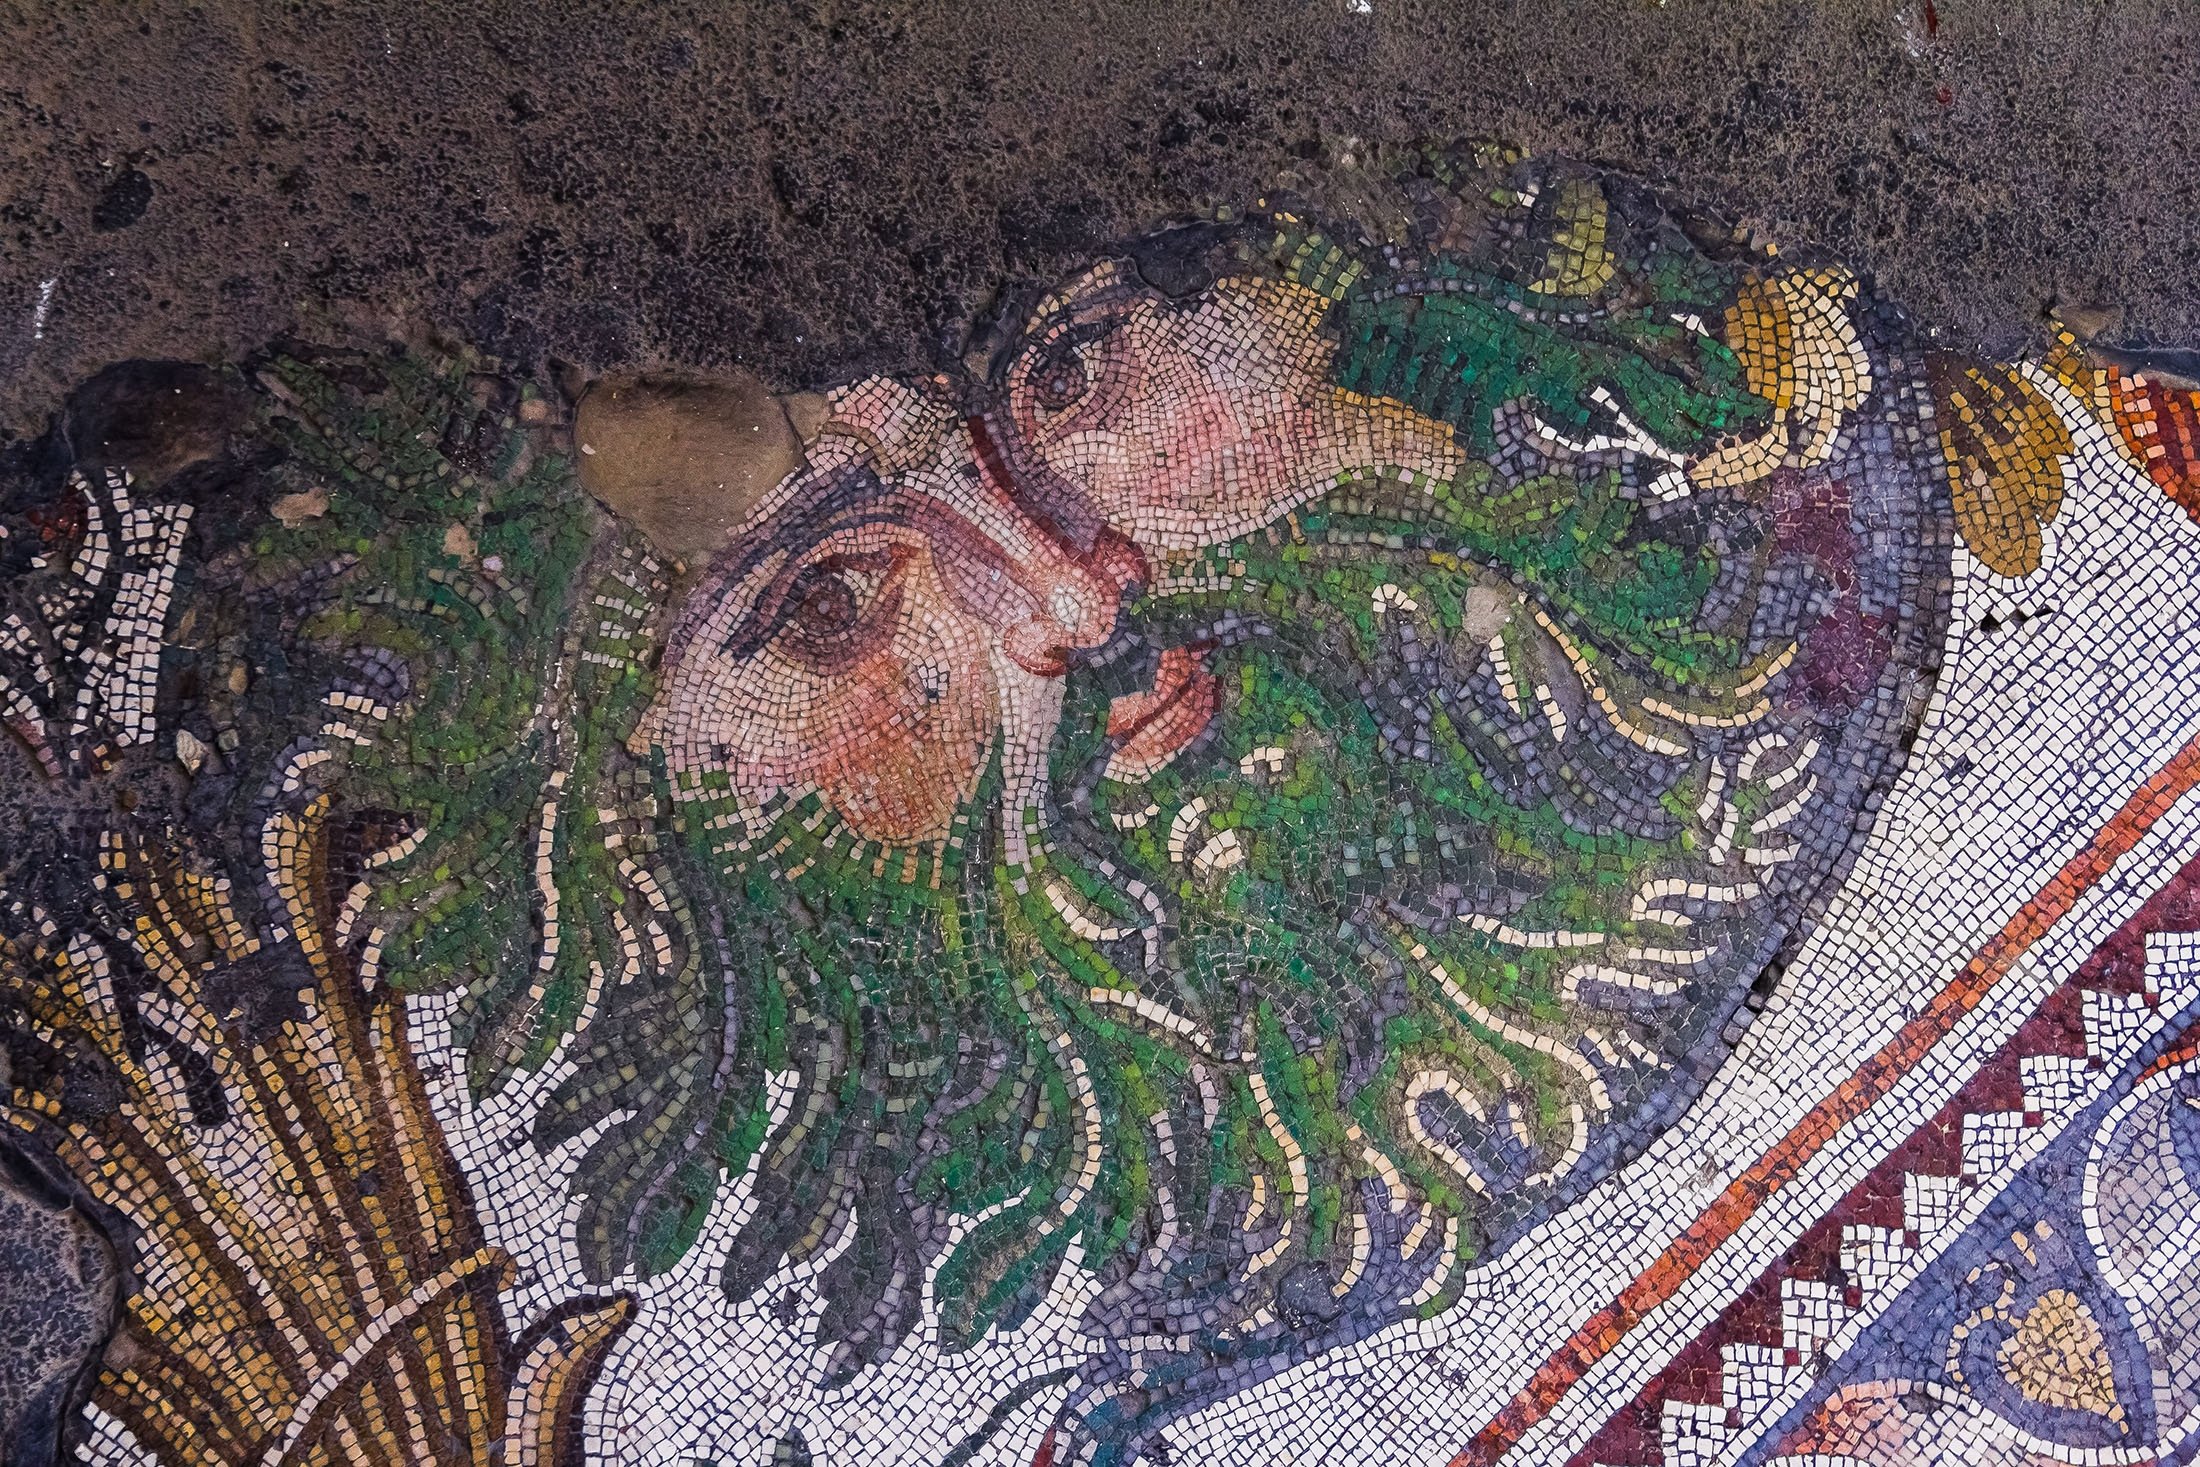 30 Nisan 2013 tarihinde İstanbul'daki Büyük Saray Mozaik Müzesi'ndeki antik bir Bizans mozaiği.  (Shutterstock fotoğrafı)